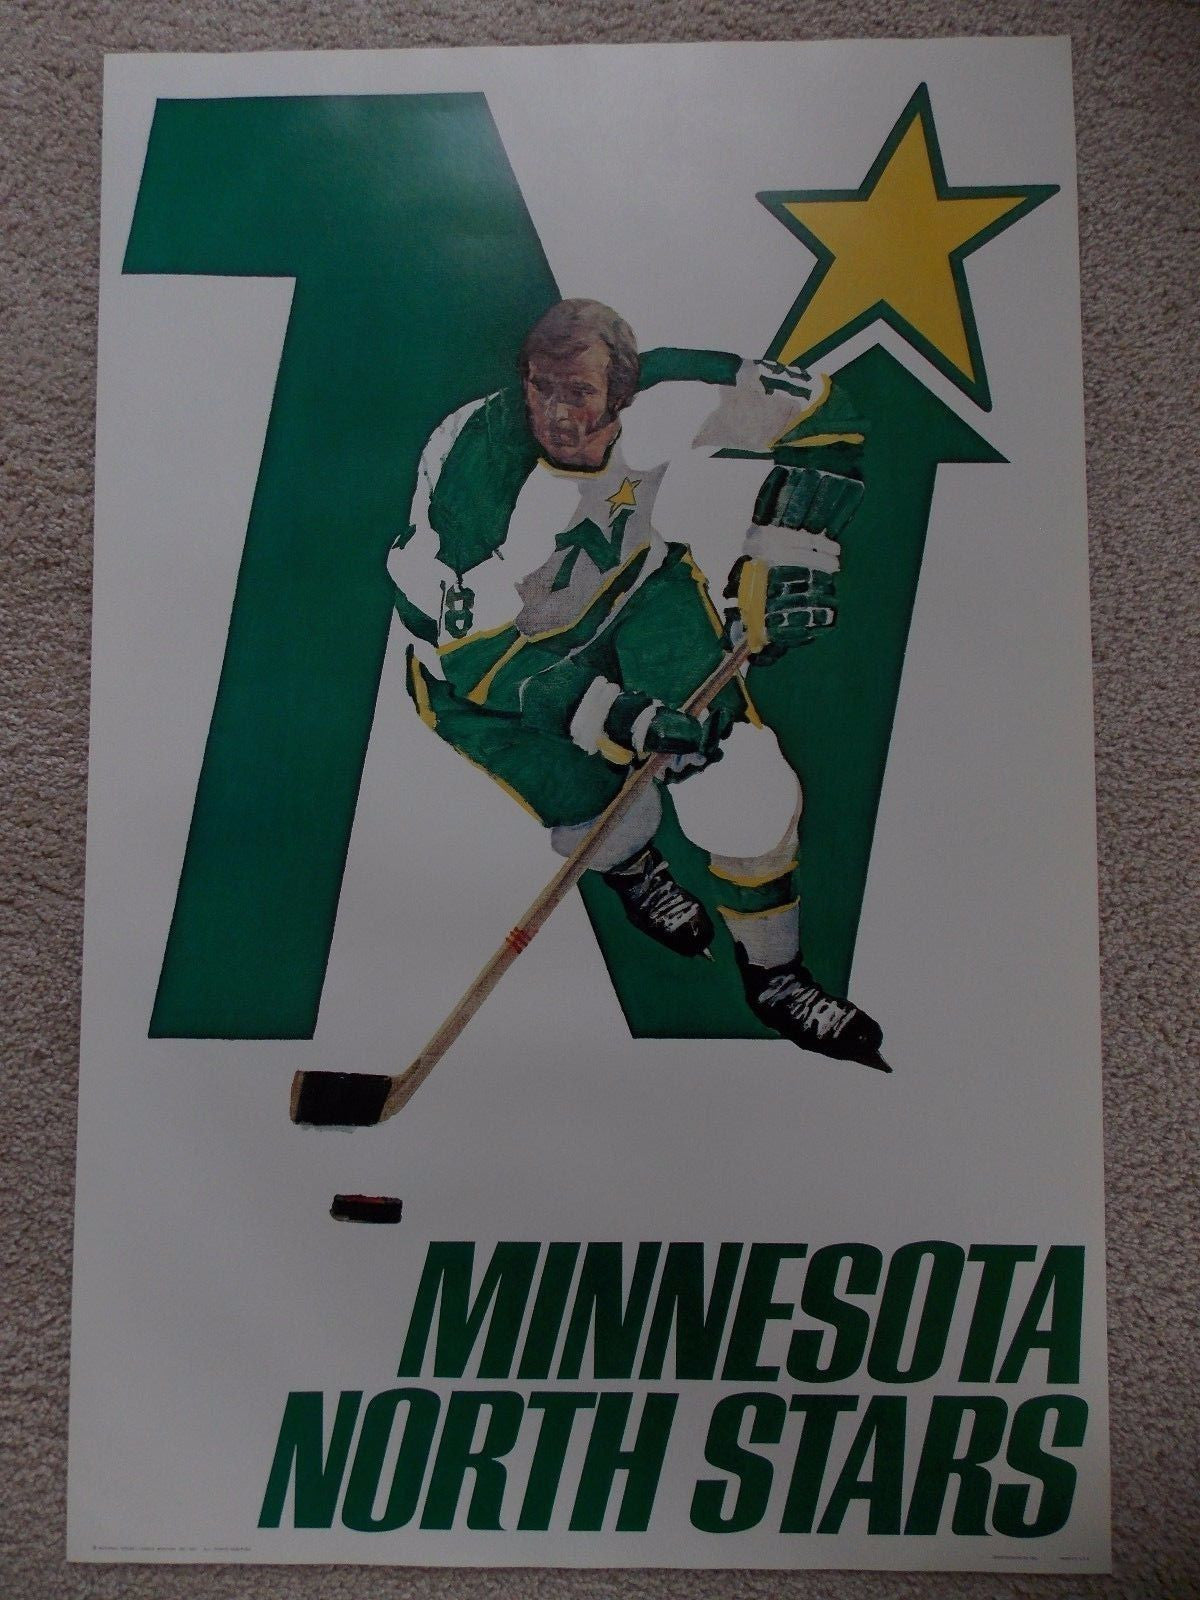 Best Seller - Minnesota North Stars Merchandise | Poster